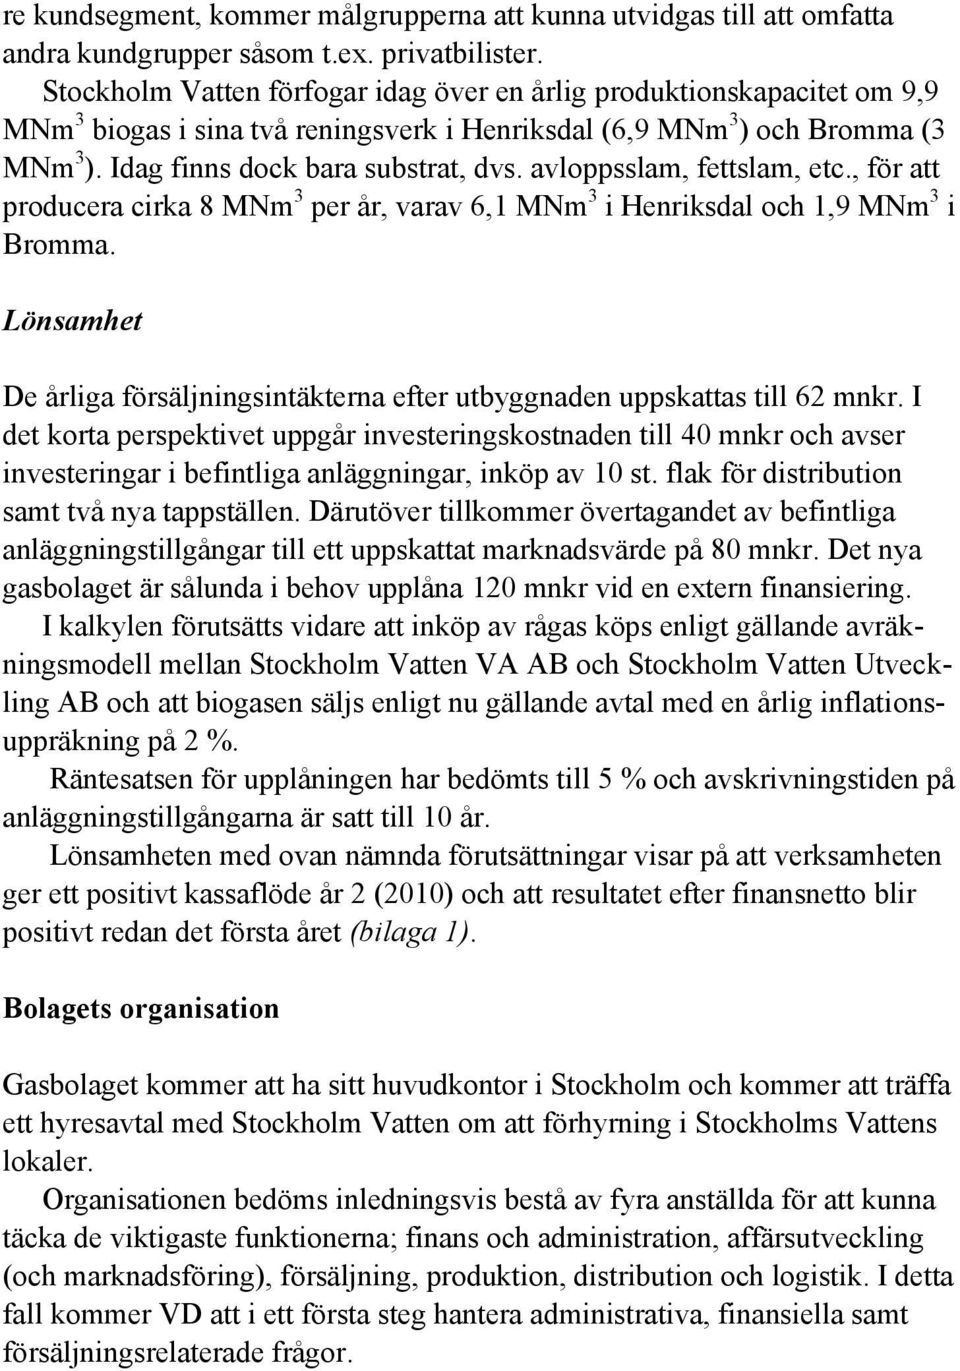 avloppsslam, fettslam, etc., för att producera cirka 8 MNm 3 per år, varav 6,1 MNm 3 i Henriksdal och 1,9 MNm 3 i Bromma.